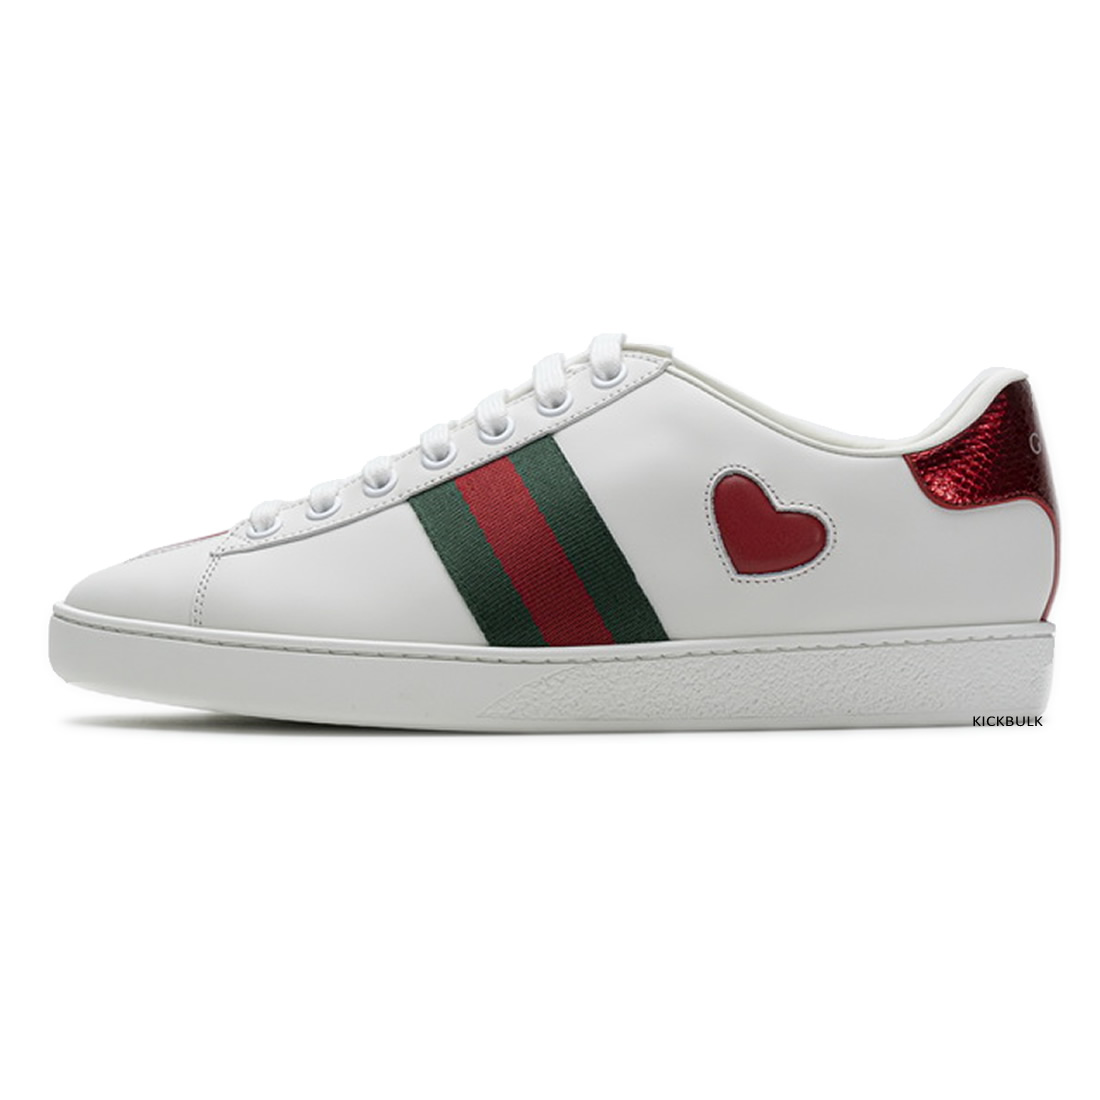 Gucci Love Sneakers 429446a39gq9085 1 - www.kickbulk.cc